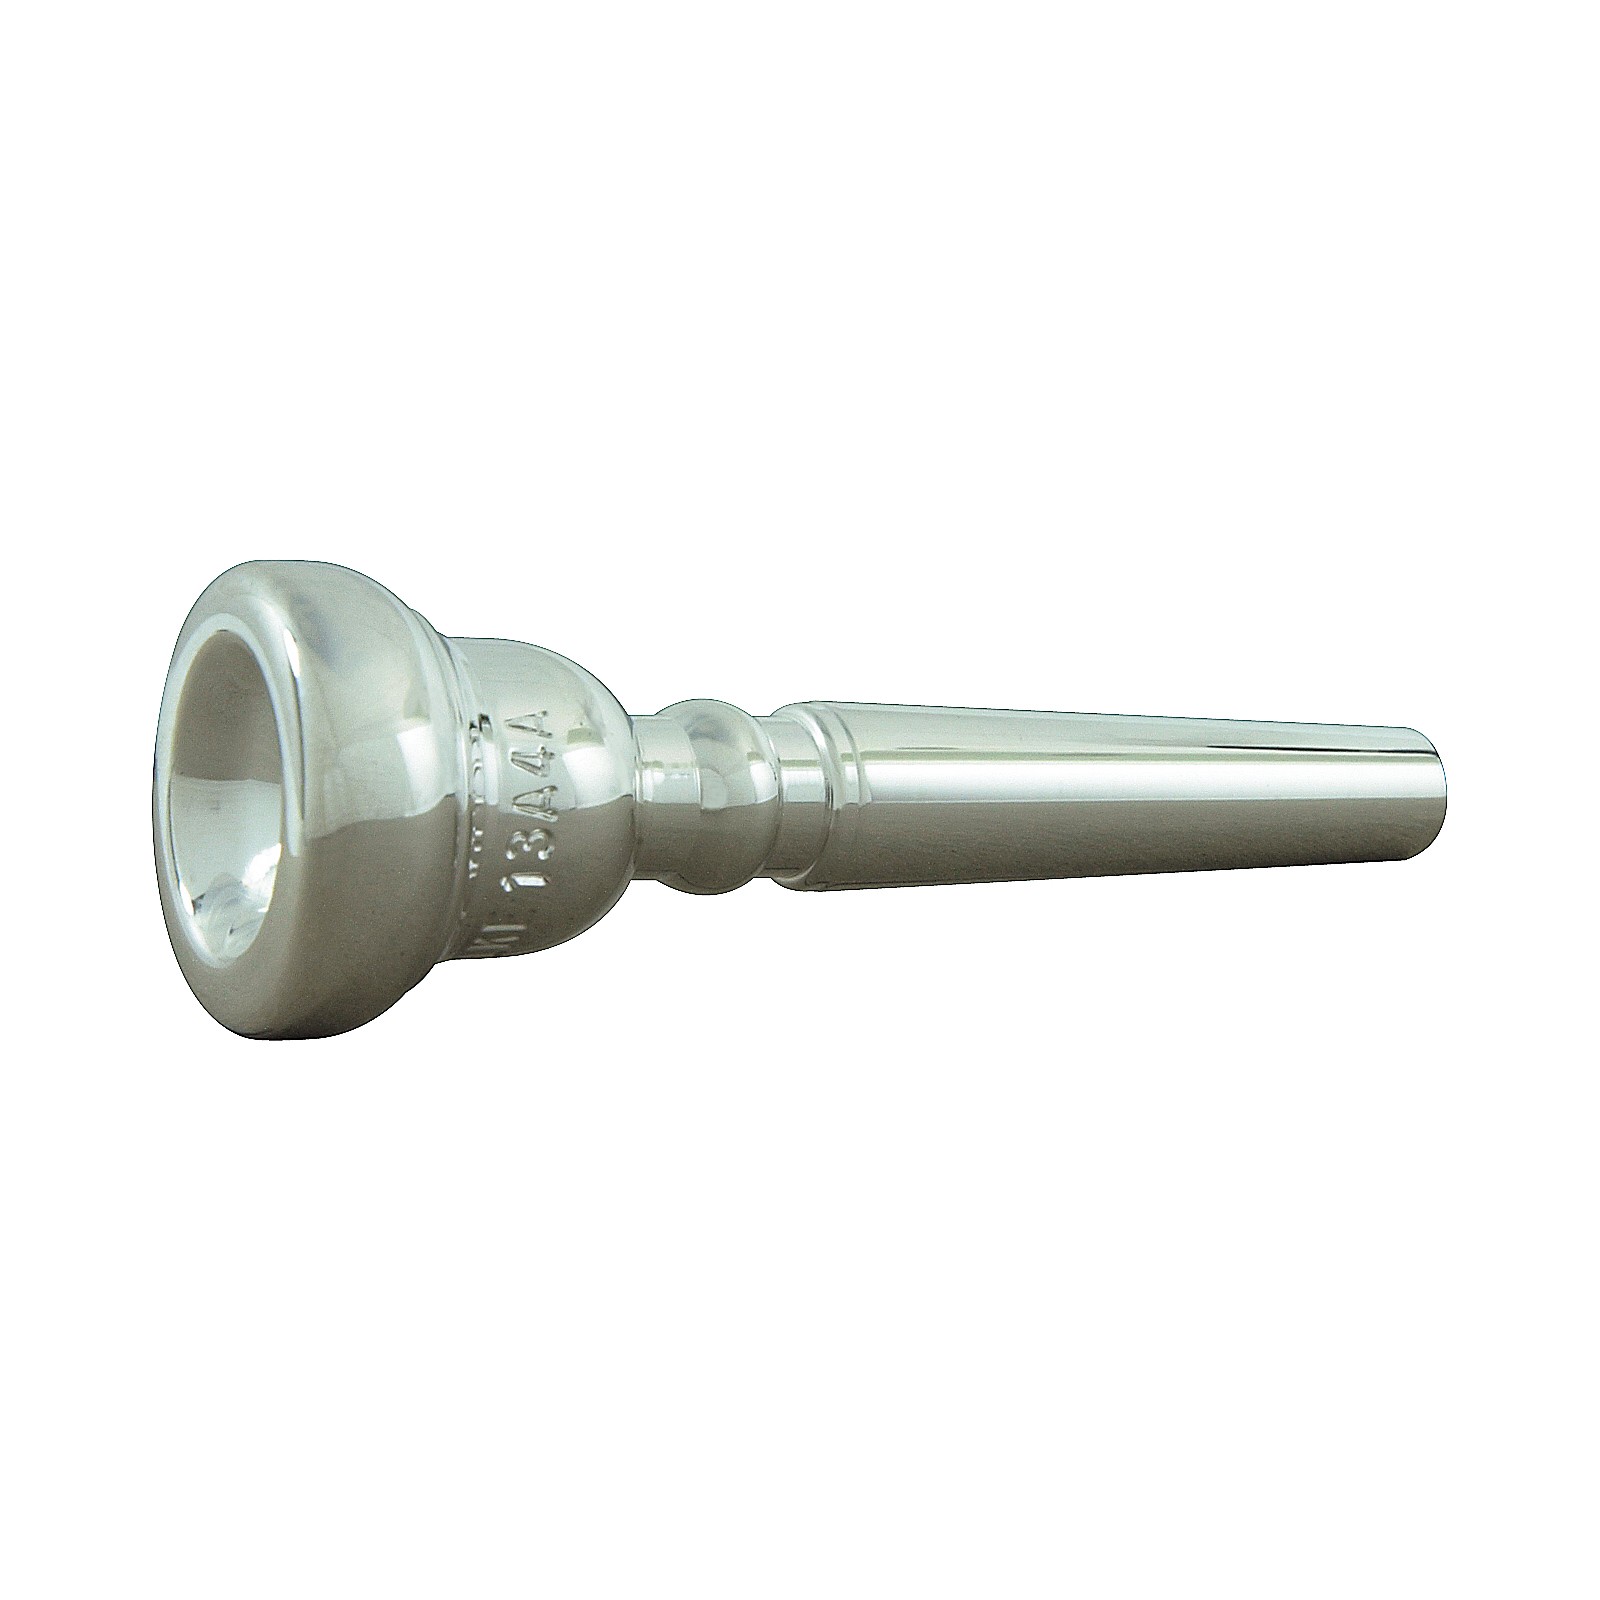 A Piccolo Trumpet Mouthpiece